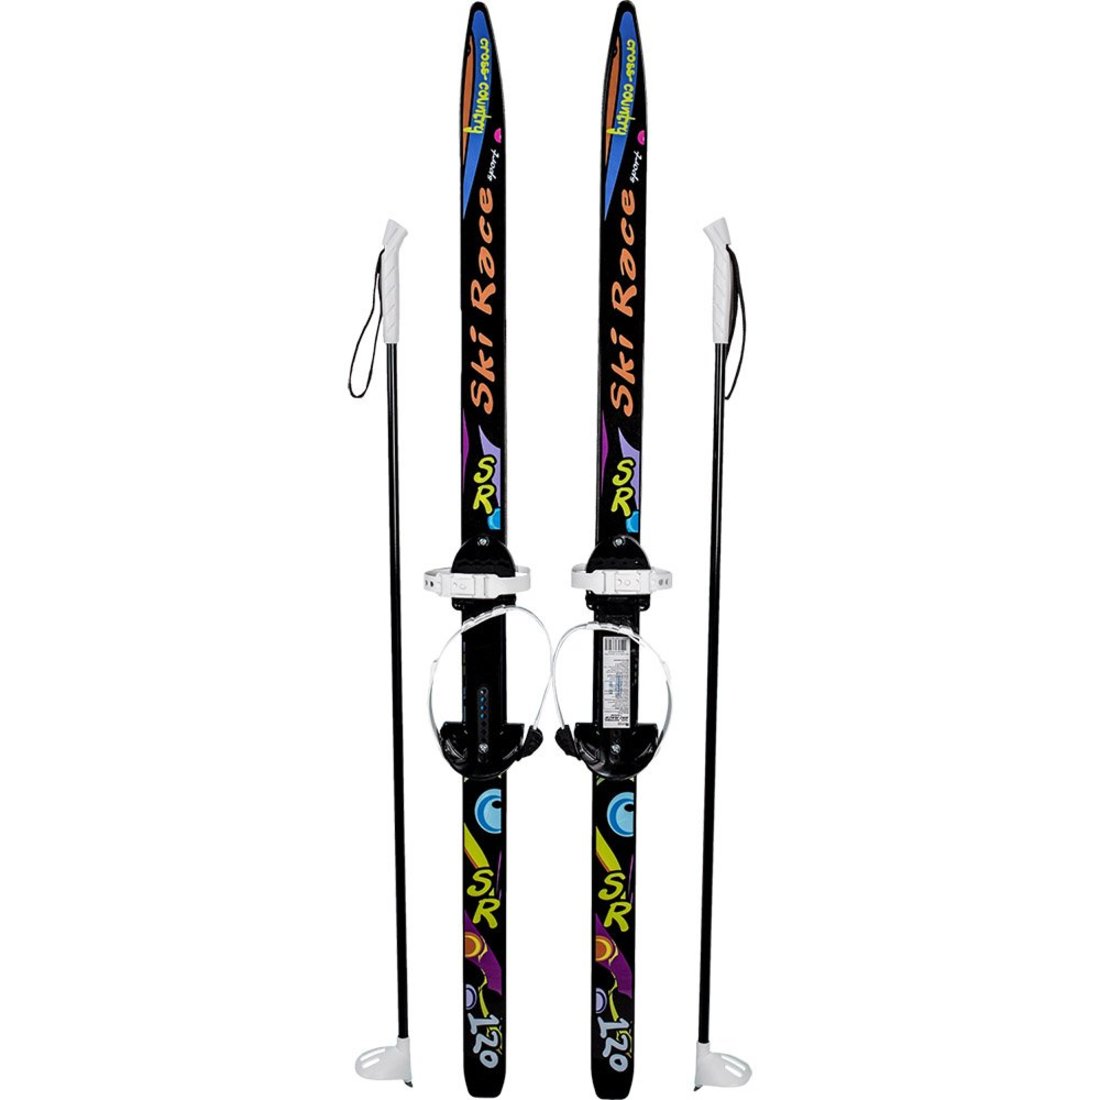 Лыжи подростковые Ski Race с палками стеклопластик, унив.крепление, (120/95)